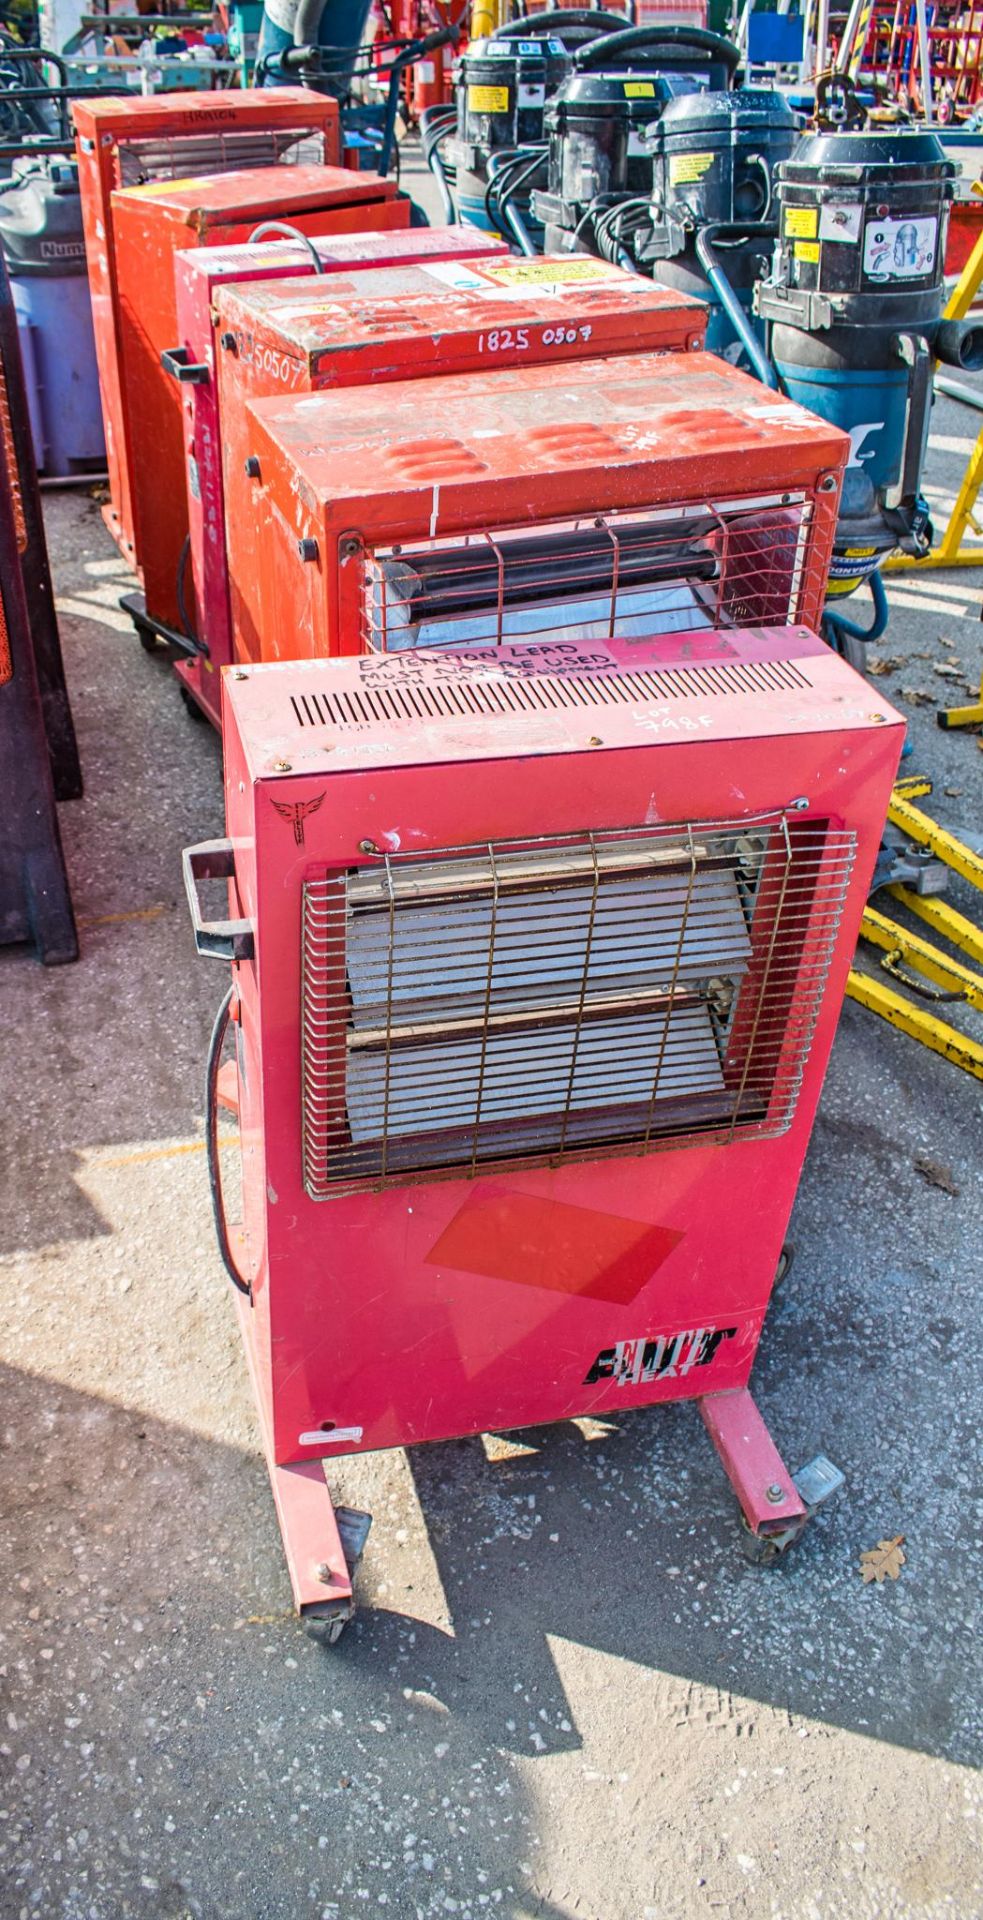 6 - 110v & 240v infra red heaters